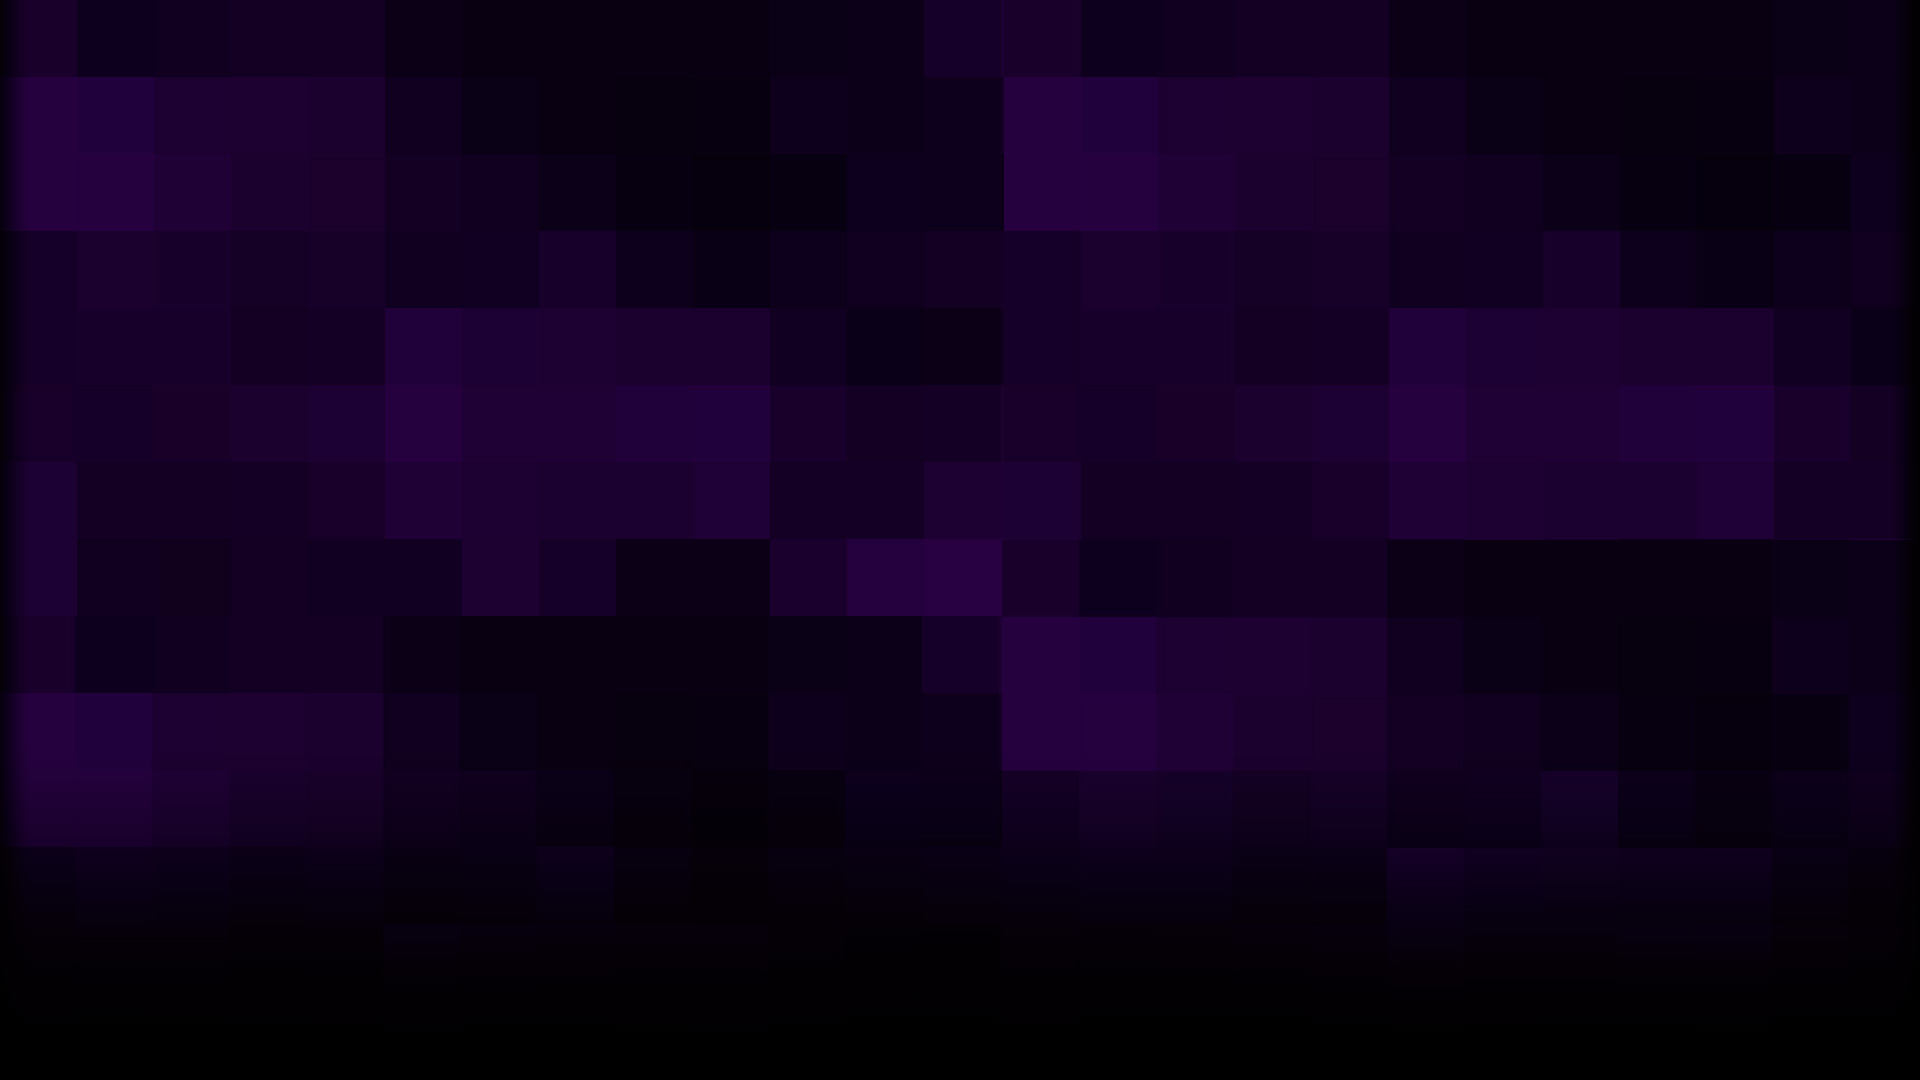 Purple Haze: Bộ ảnh sắc màu tím huyền diệu dưới tên gọi Purple Haze đang chờ đón bạn. Nhấn play và thả mình vào không gian đầy mê hoặc của những cơn mưa tím với những cánh hoa tím đang rơi rụng.